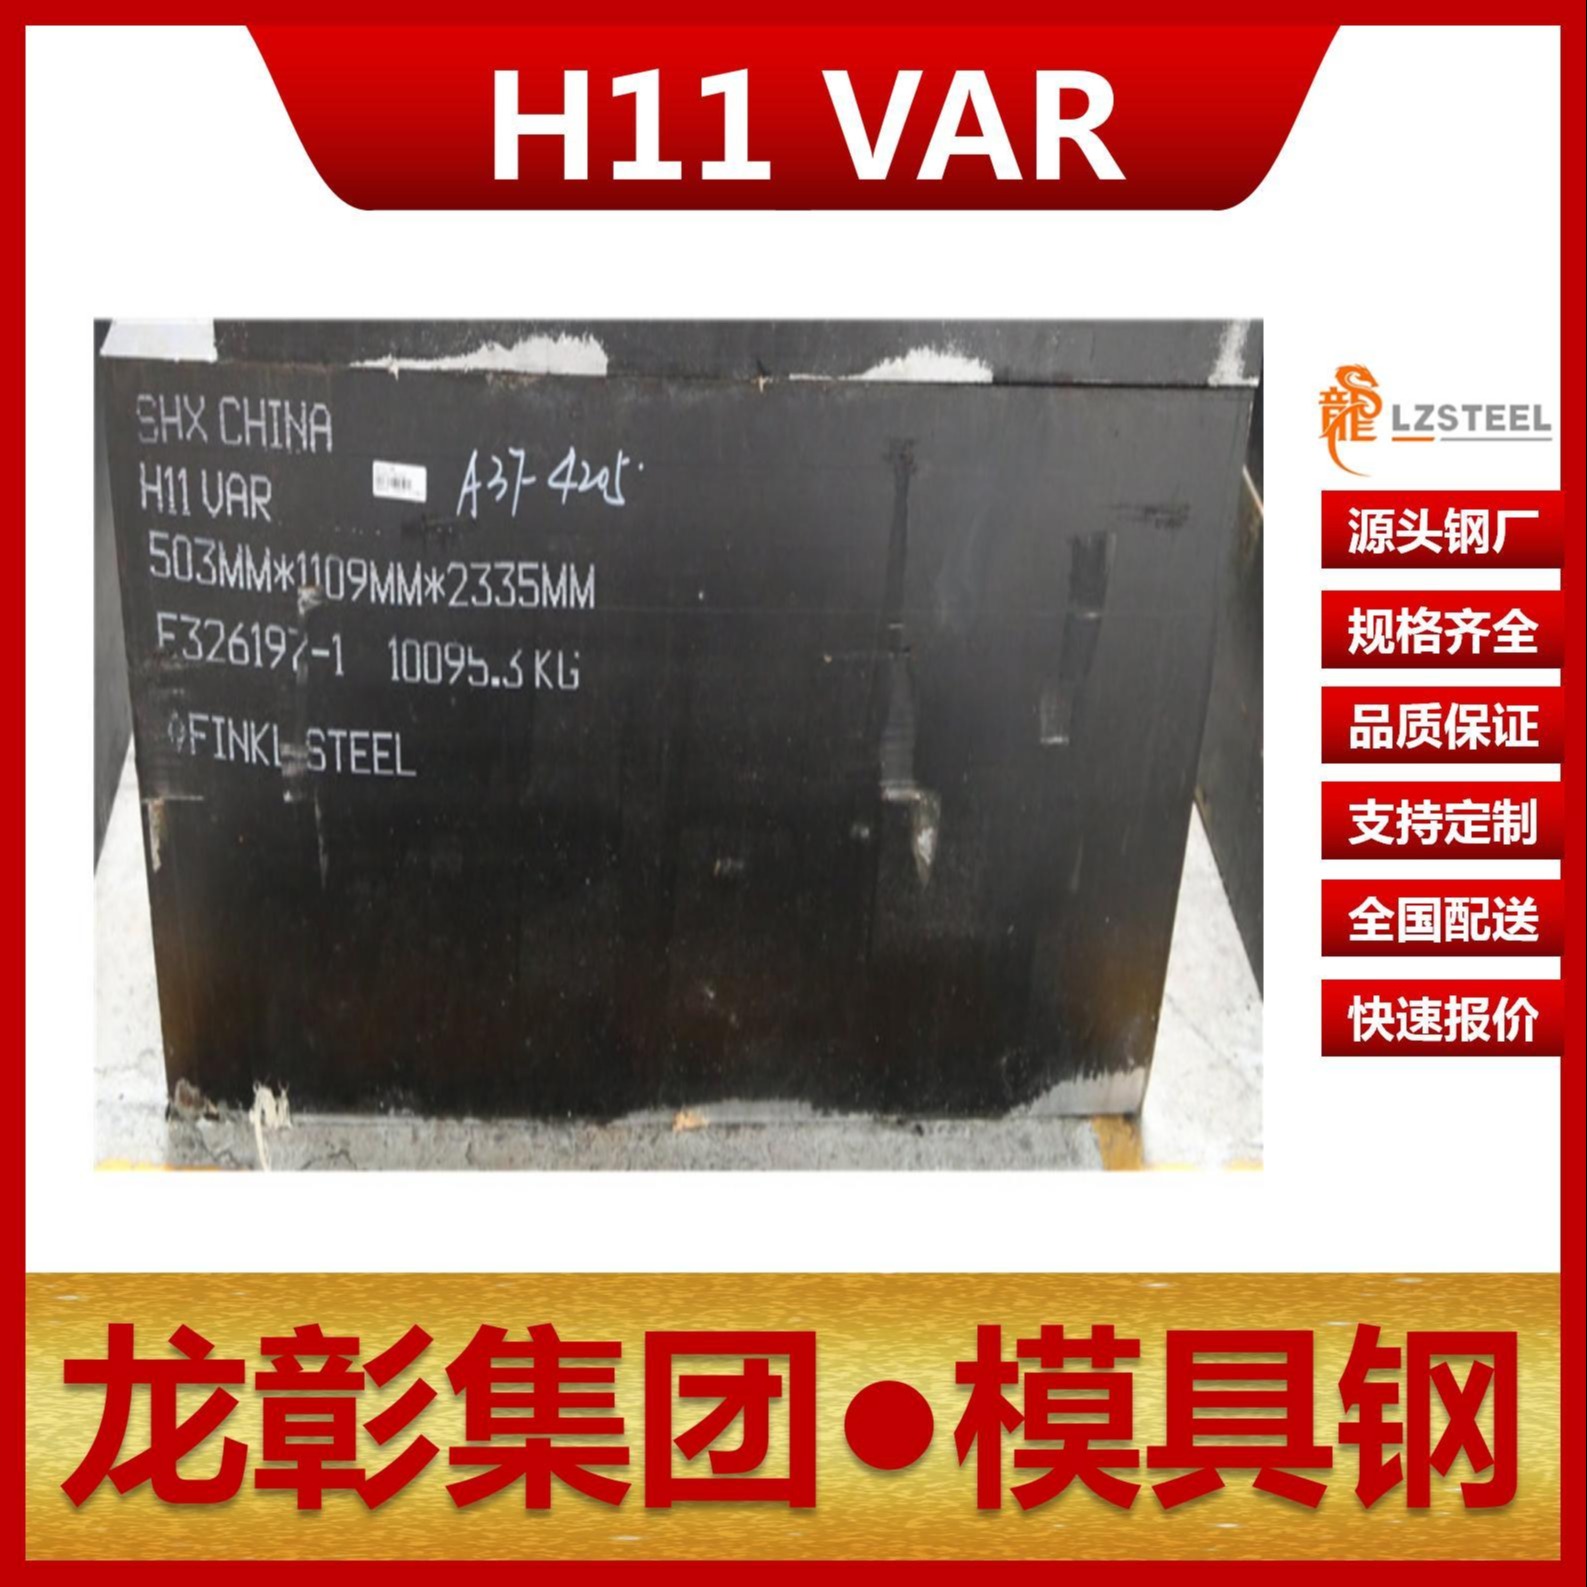 芬可乐H11 VAR模具钢现货批零 进口H11 VAR扁钢圆棒热作模具钢龙彰集团图片